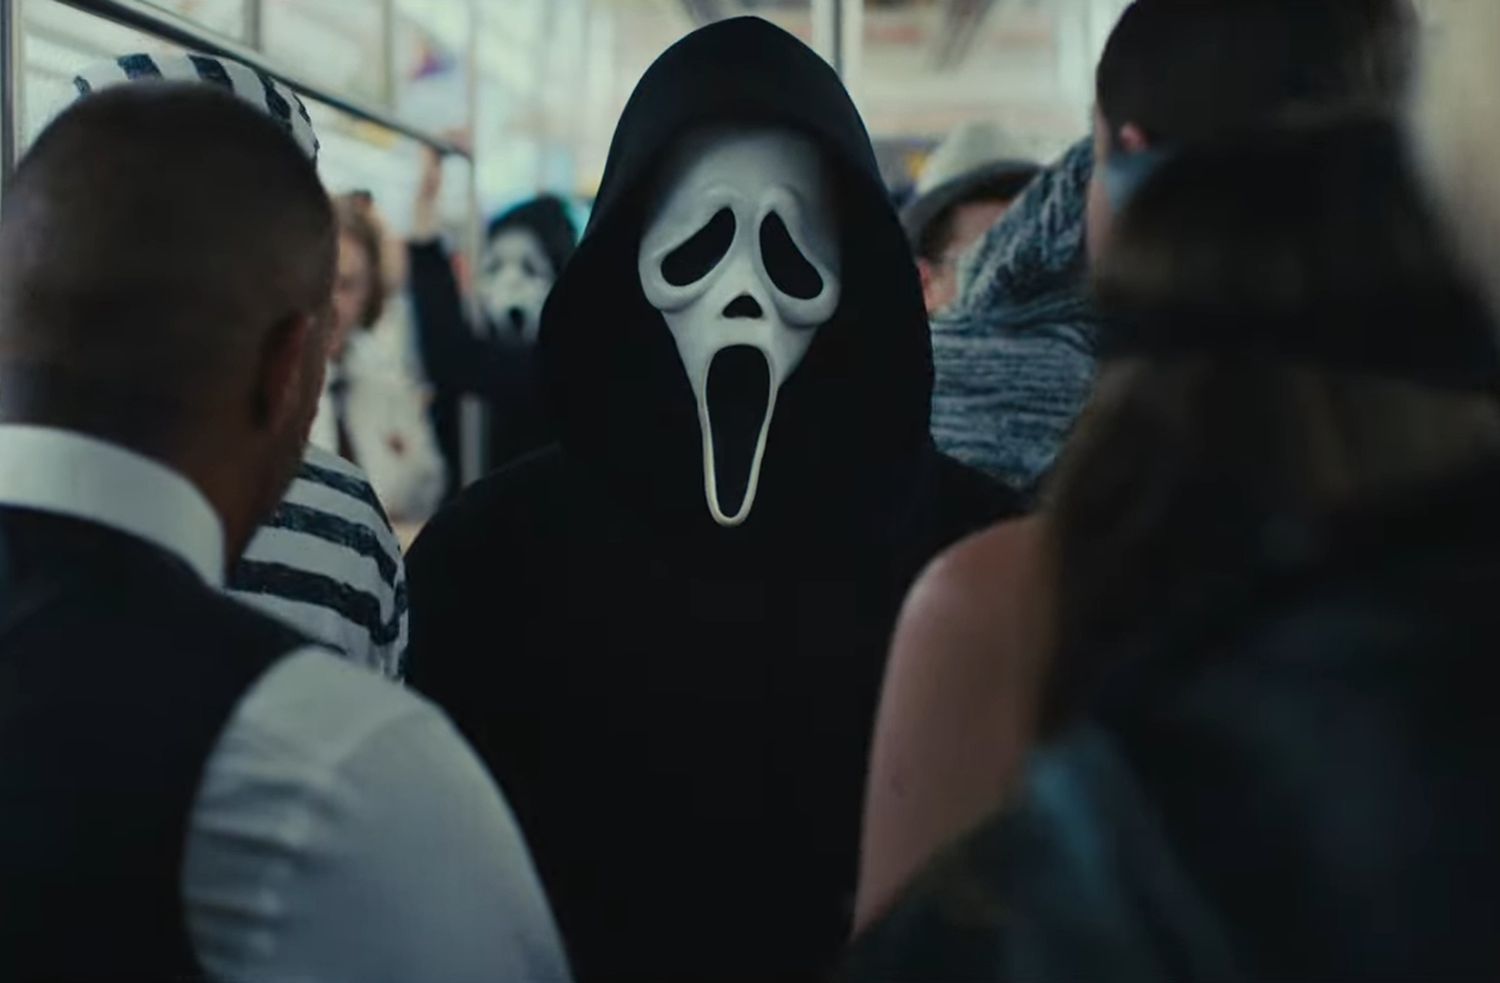 Cena do filme Pânico 6. Nela, observa-se uma pessoa vestida com a fantasia do vilão Ghostface. Sua roupa consiste em um manto preto e uma máscara branca com olhos, nariz e boca deformados.